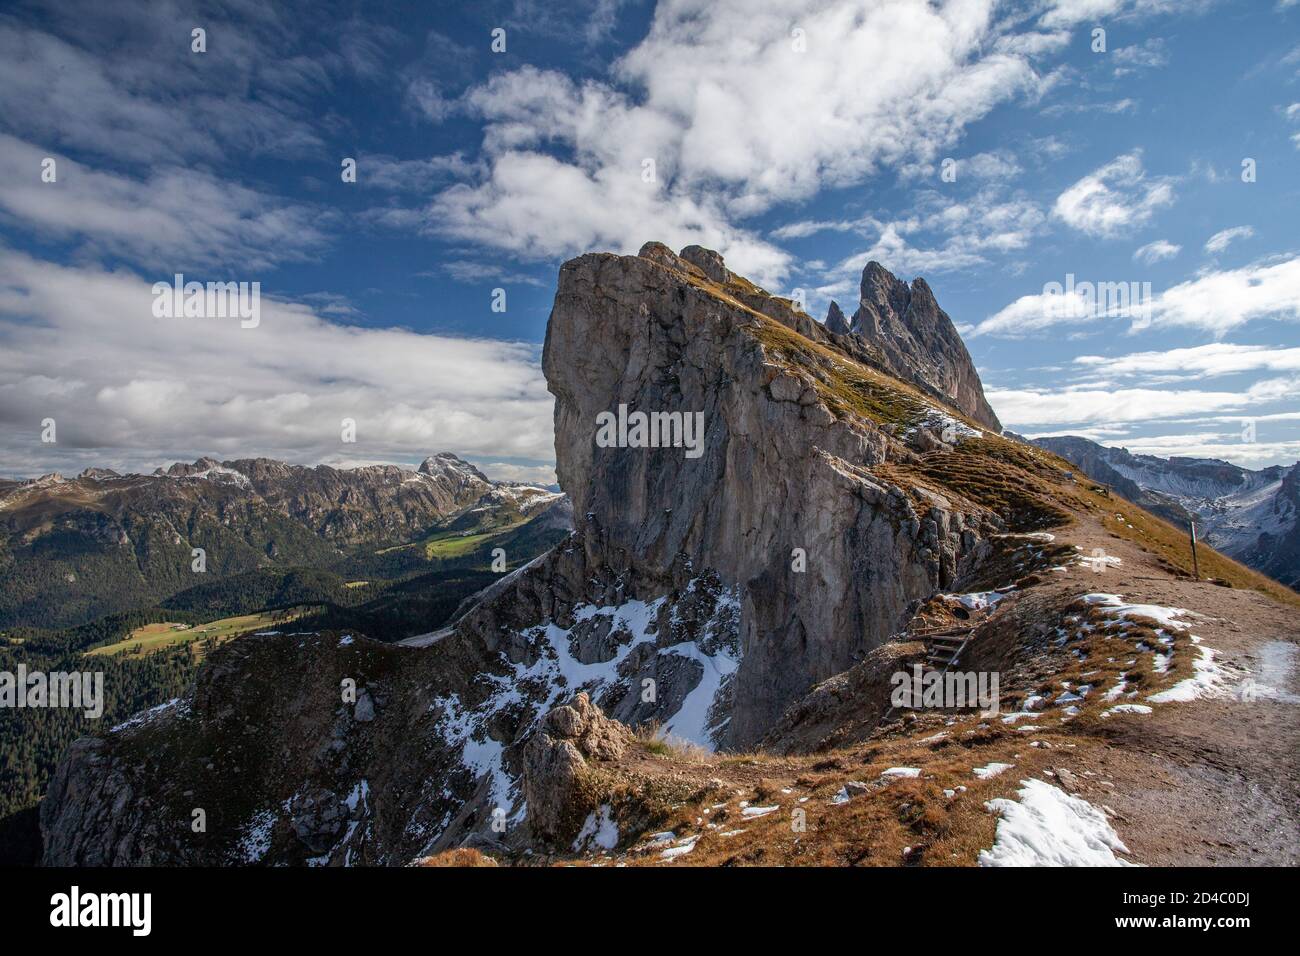 Die Seceda-Bergkette, einer der berühmtesten Bergrücken der italienischen Dolomiten, neigt sich nach oben in den Himmel, mit weiteren Berggipfeln in der Ferne Stockfoto